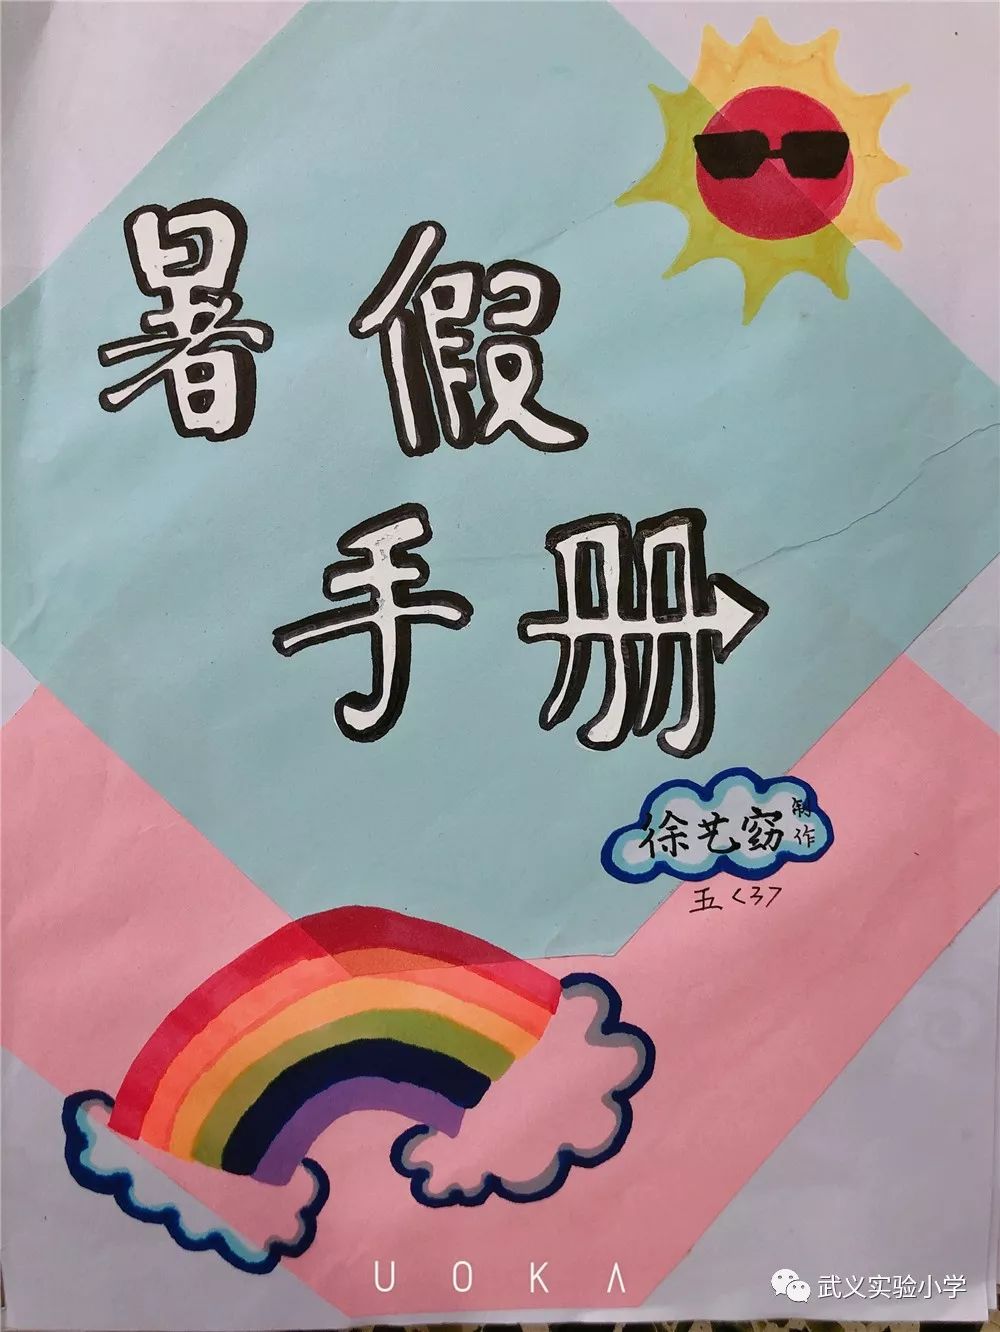 2019,"你好暑假"看梅郎梅朵之假期手册手绘封面